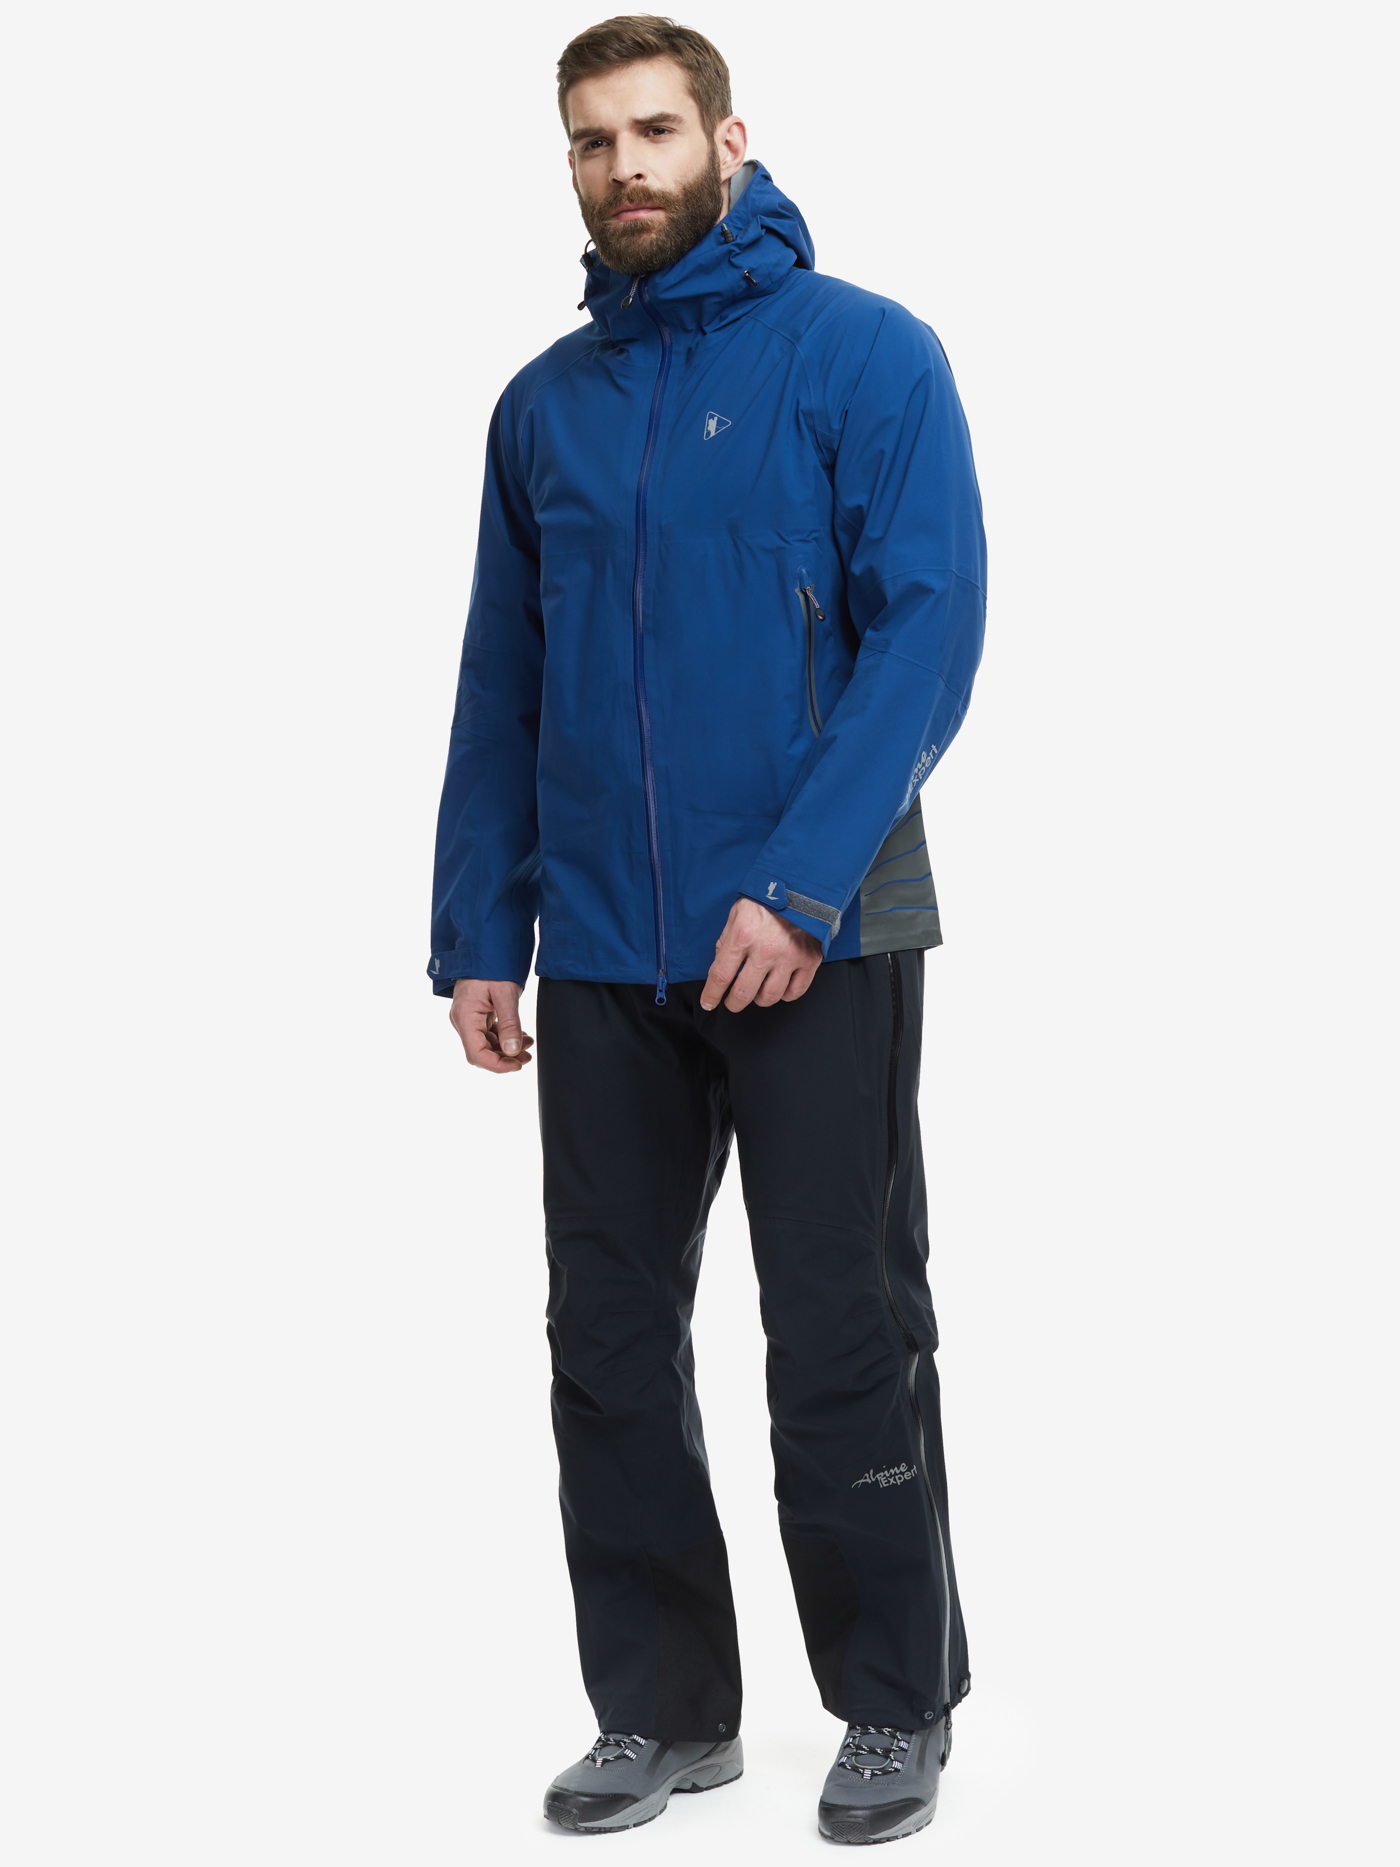 Штормовая куртка BASK Graphite Neoshell Extreme 3534a, купить с доставкой